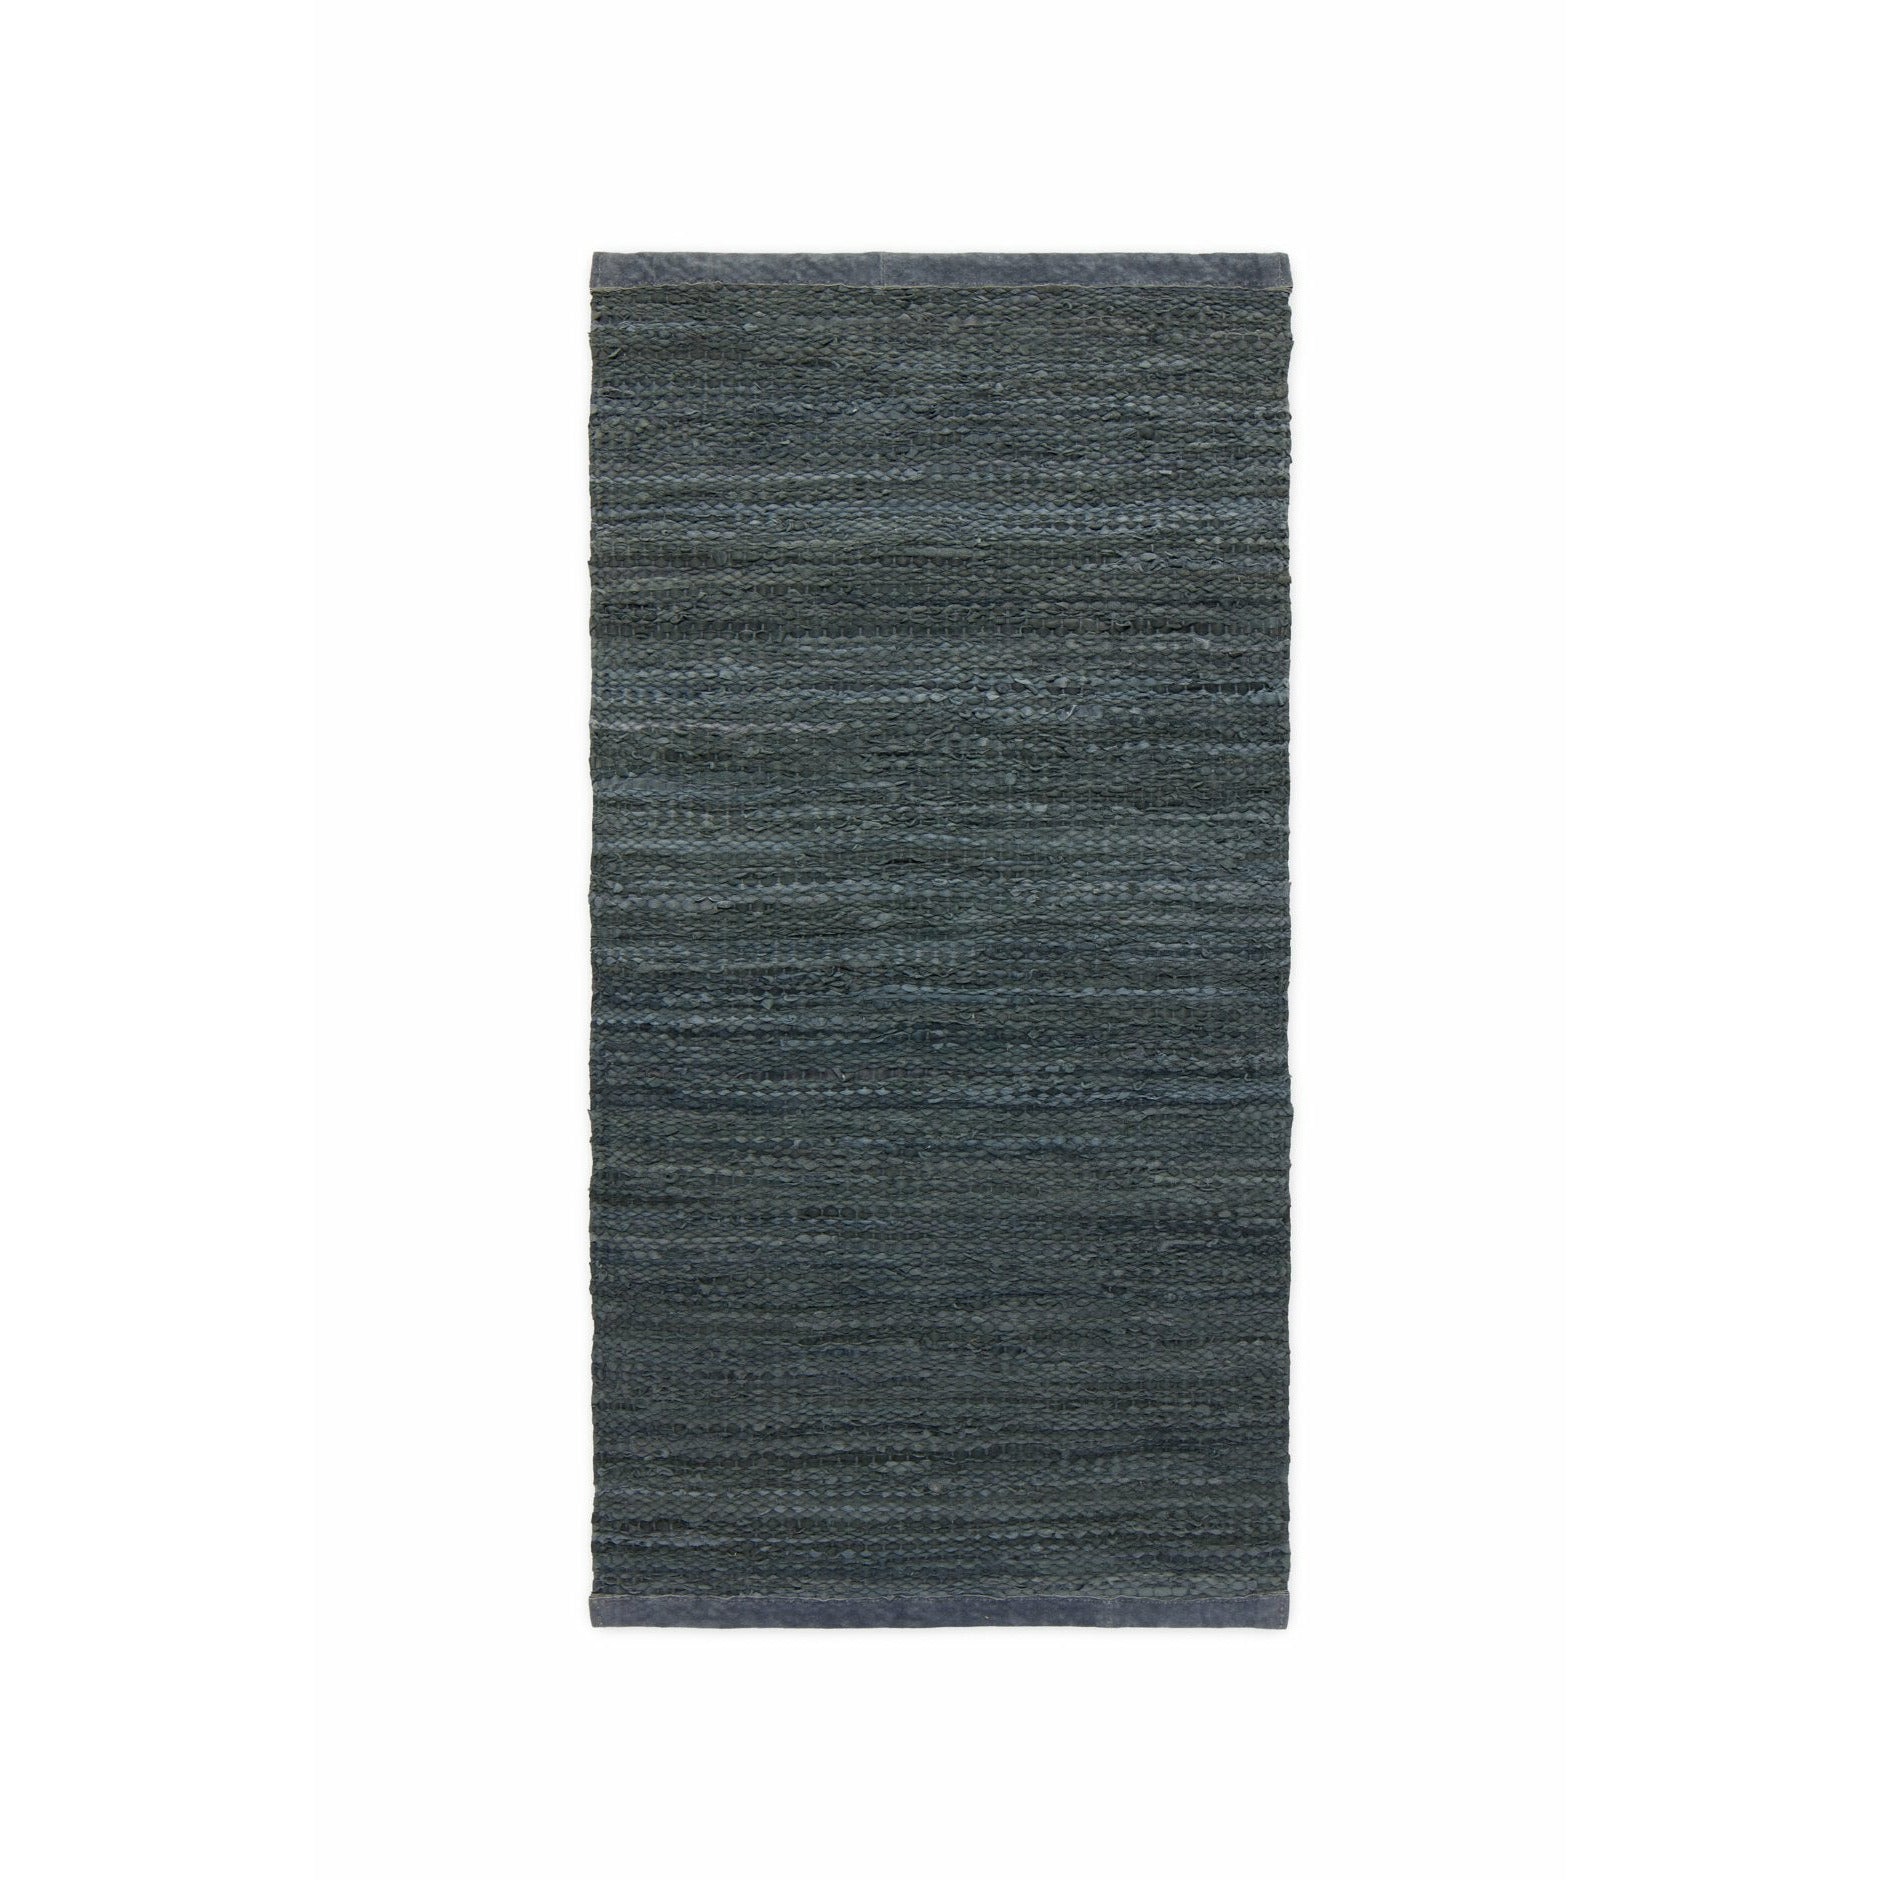 Tapis en cuir massif gris foncé, 75 x 200 cm